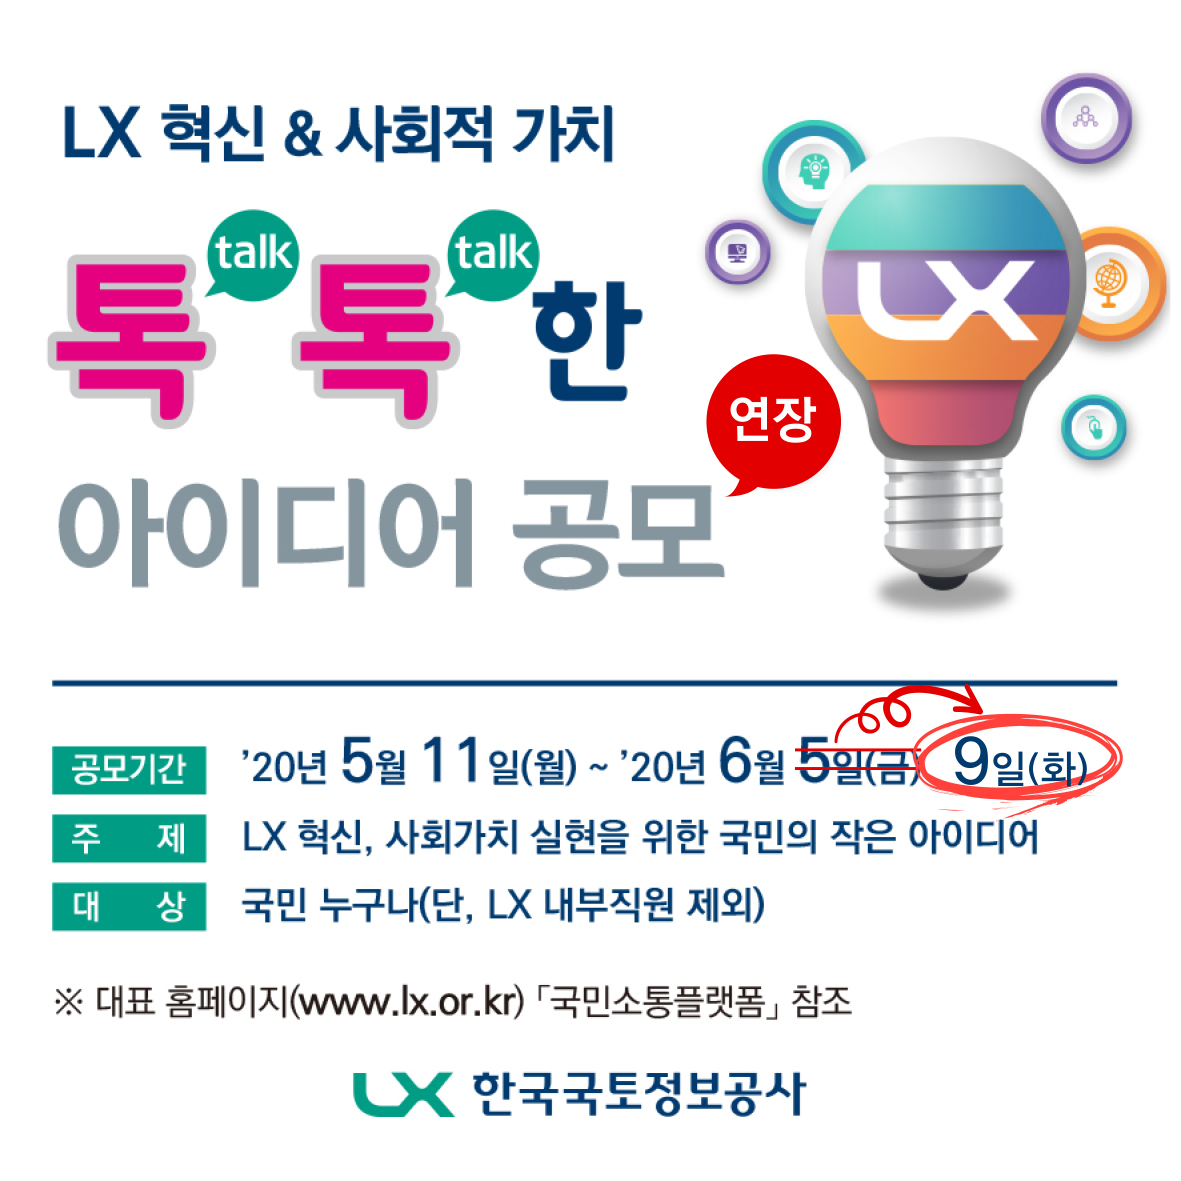 LX 혁신 & 사회적 가치, 톡톡한 아이디어 공모 포스터 이미지 입니다. 상세내용은 첨부된 공고문을 참조해 주세요.